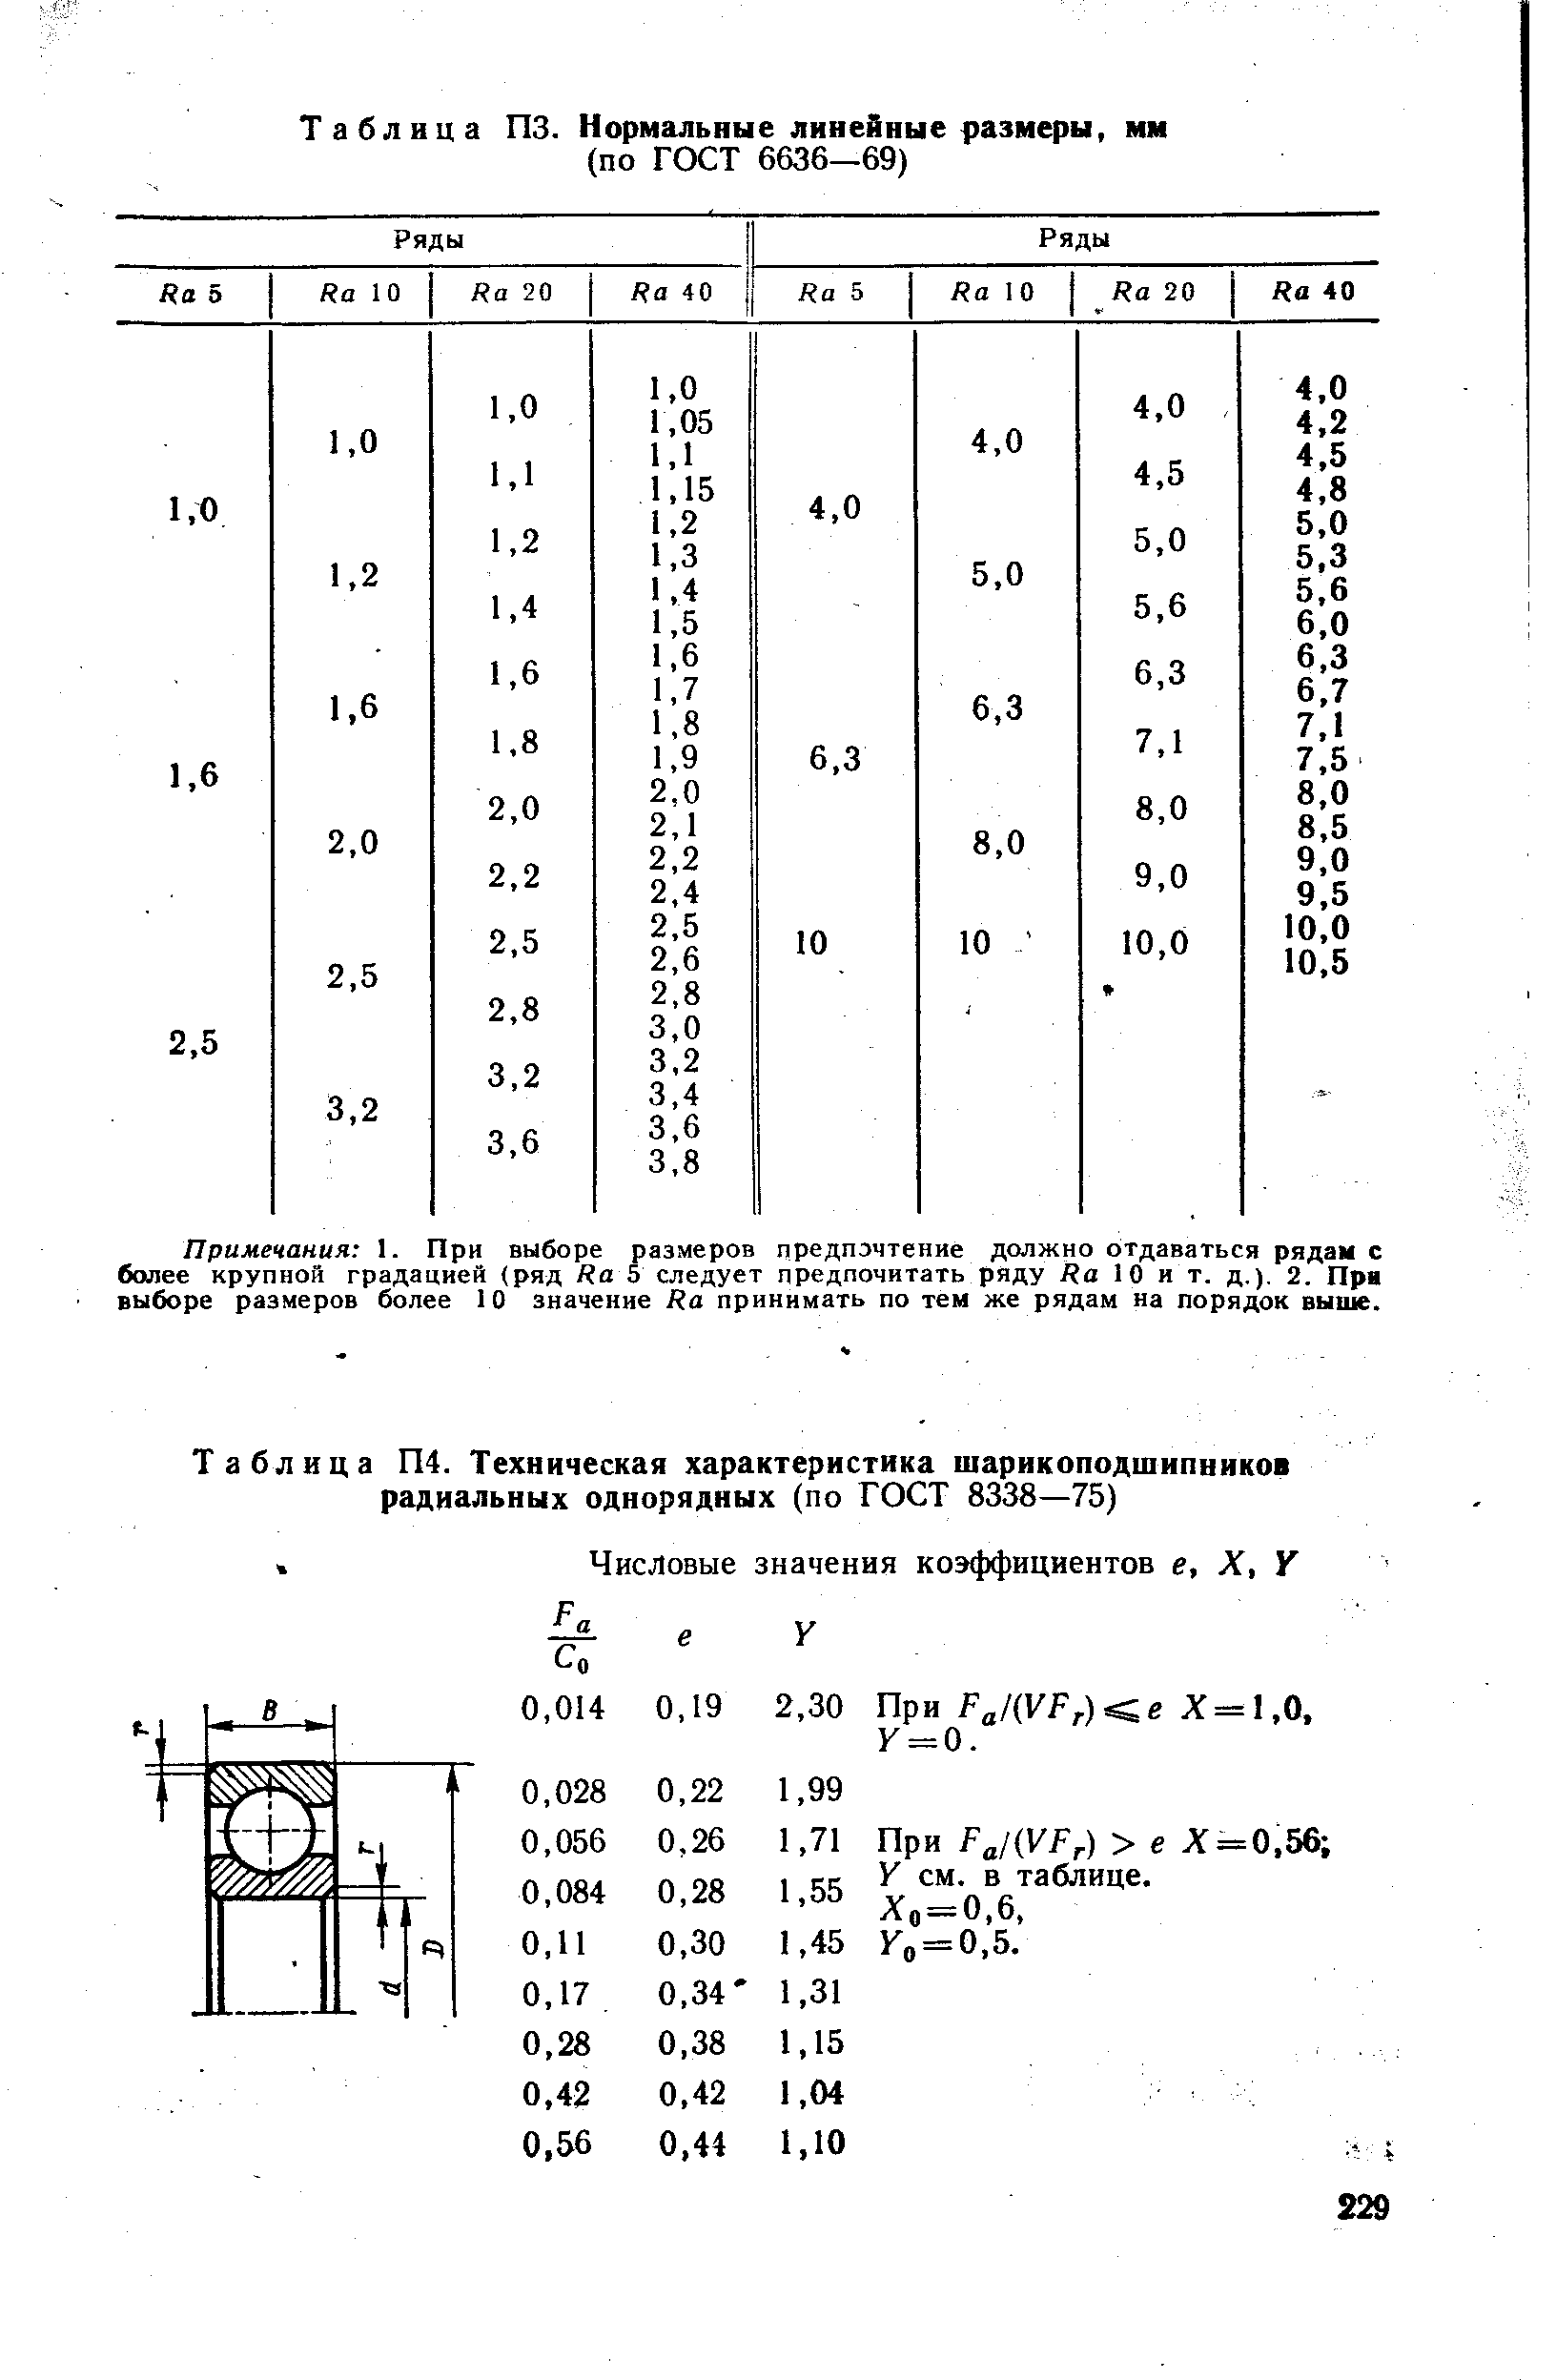 Таблица П4. Техническая характеристика <a href="/info/231051">шарикоподшипников радиальных однорядных</a> (по ГОСТ 8338—75)
